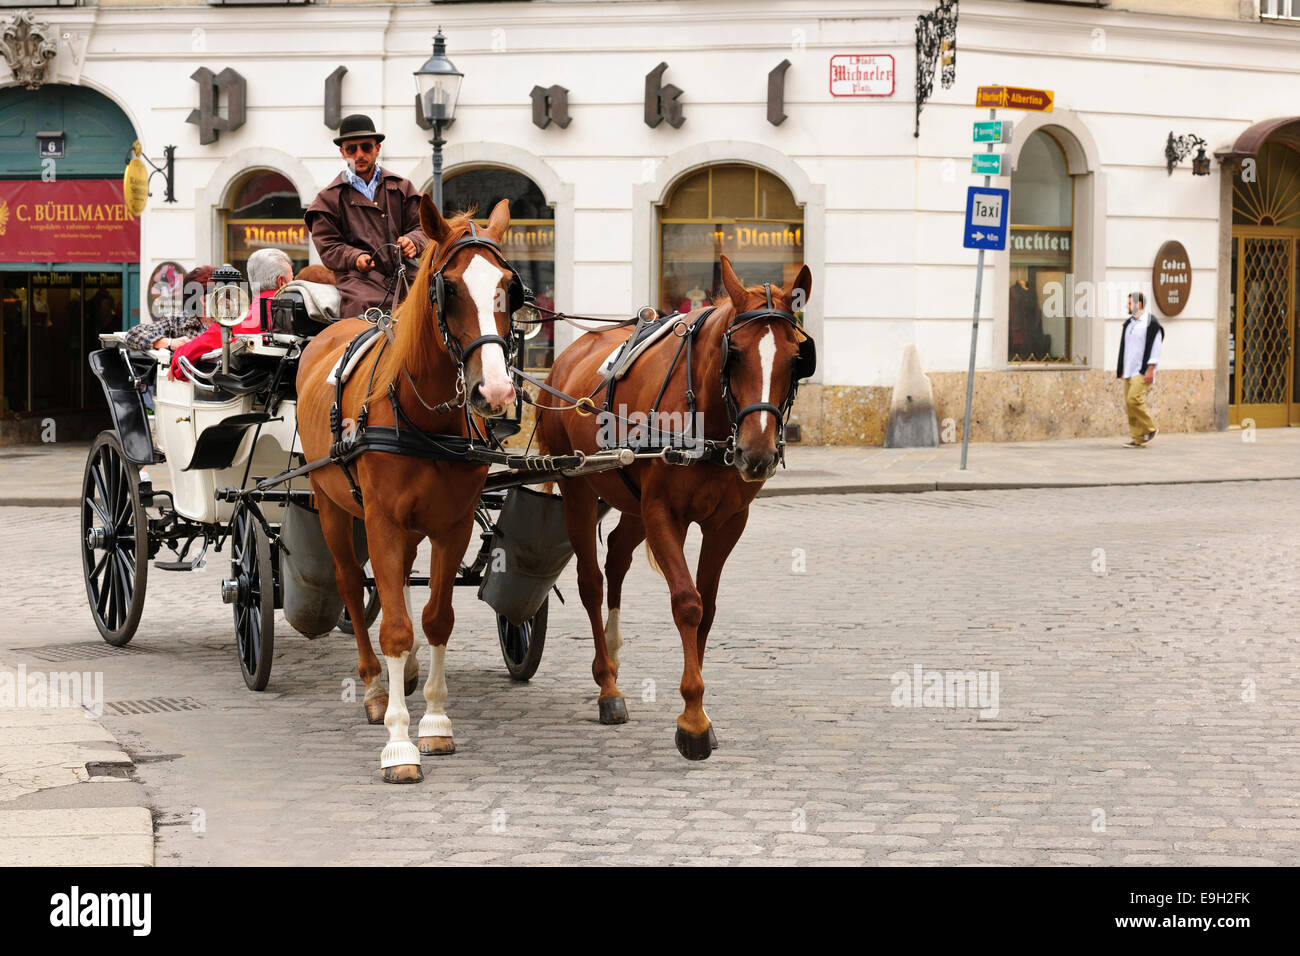 Fiaker, horse-drawn carriage, Vienna, Austria Stock Photo